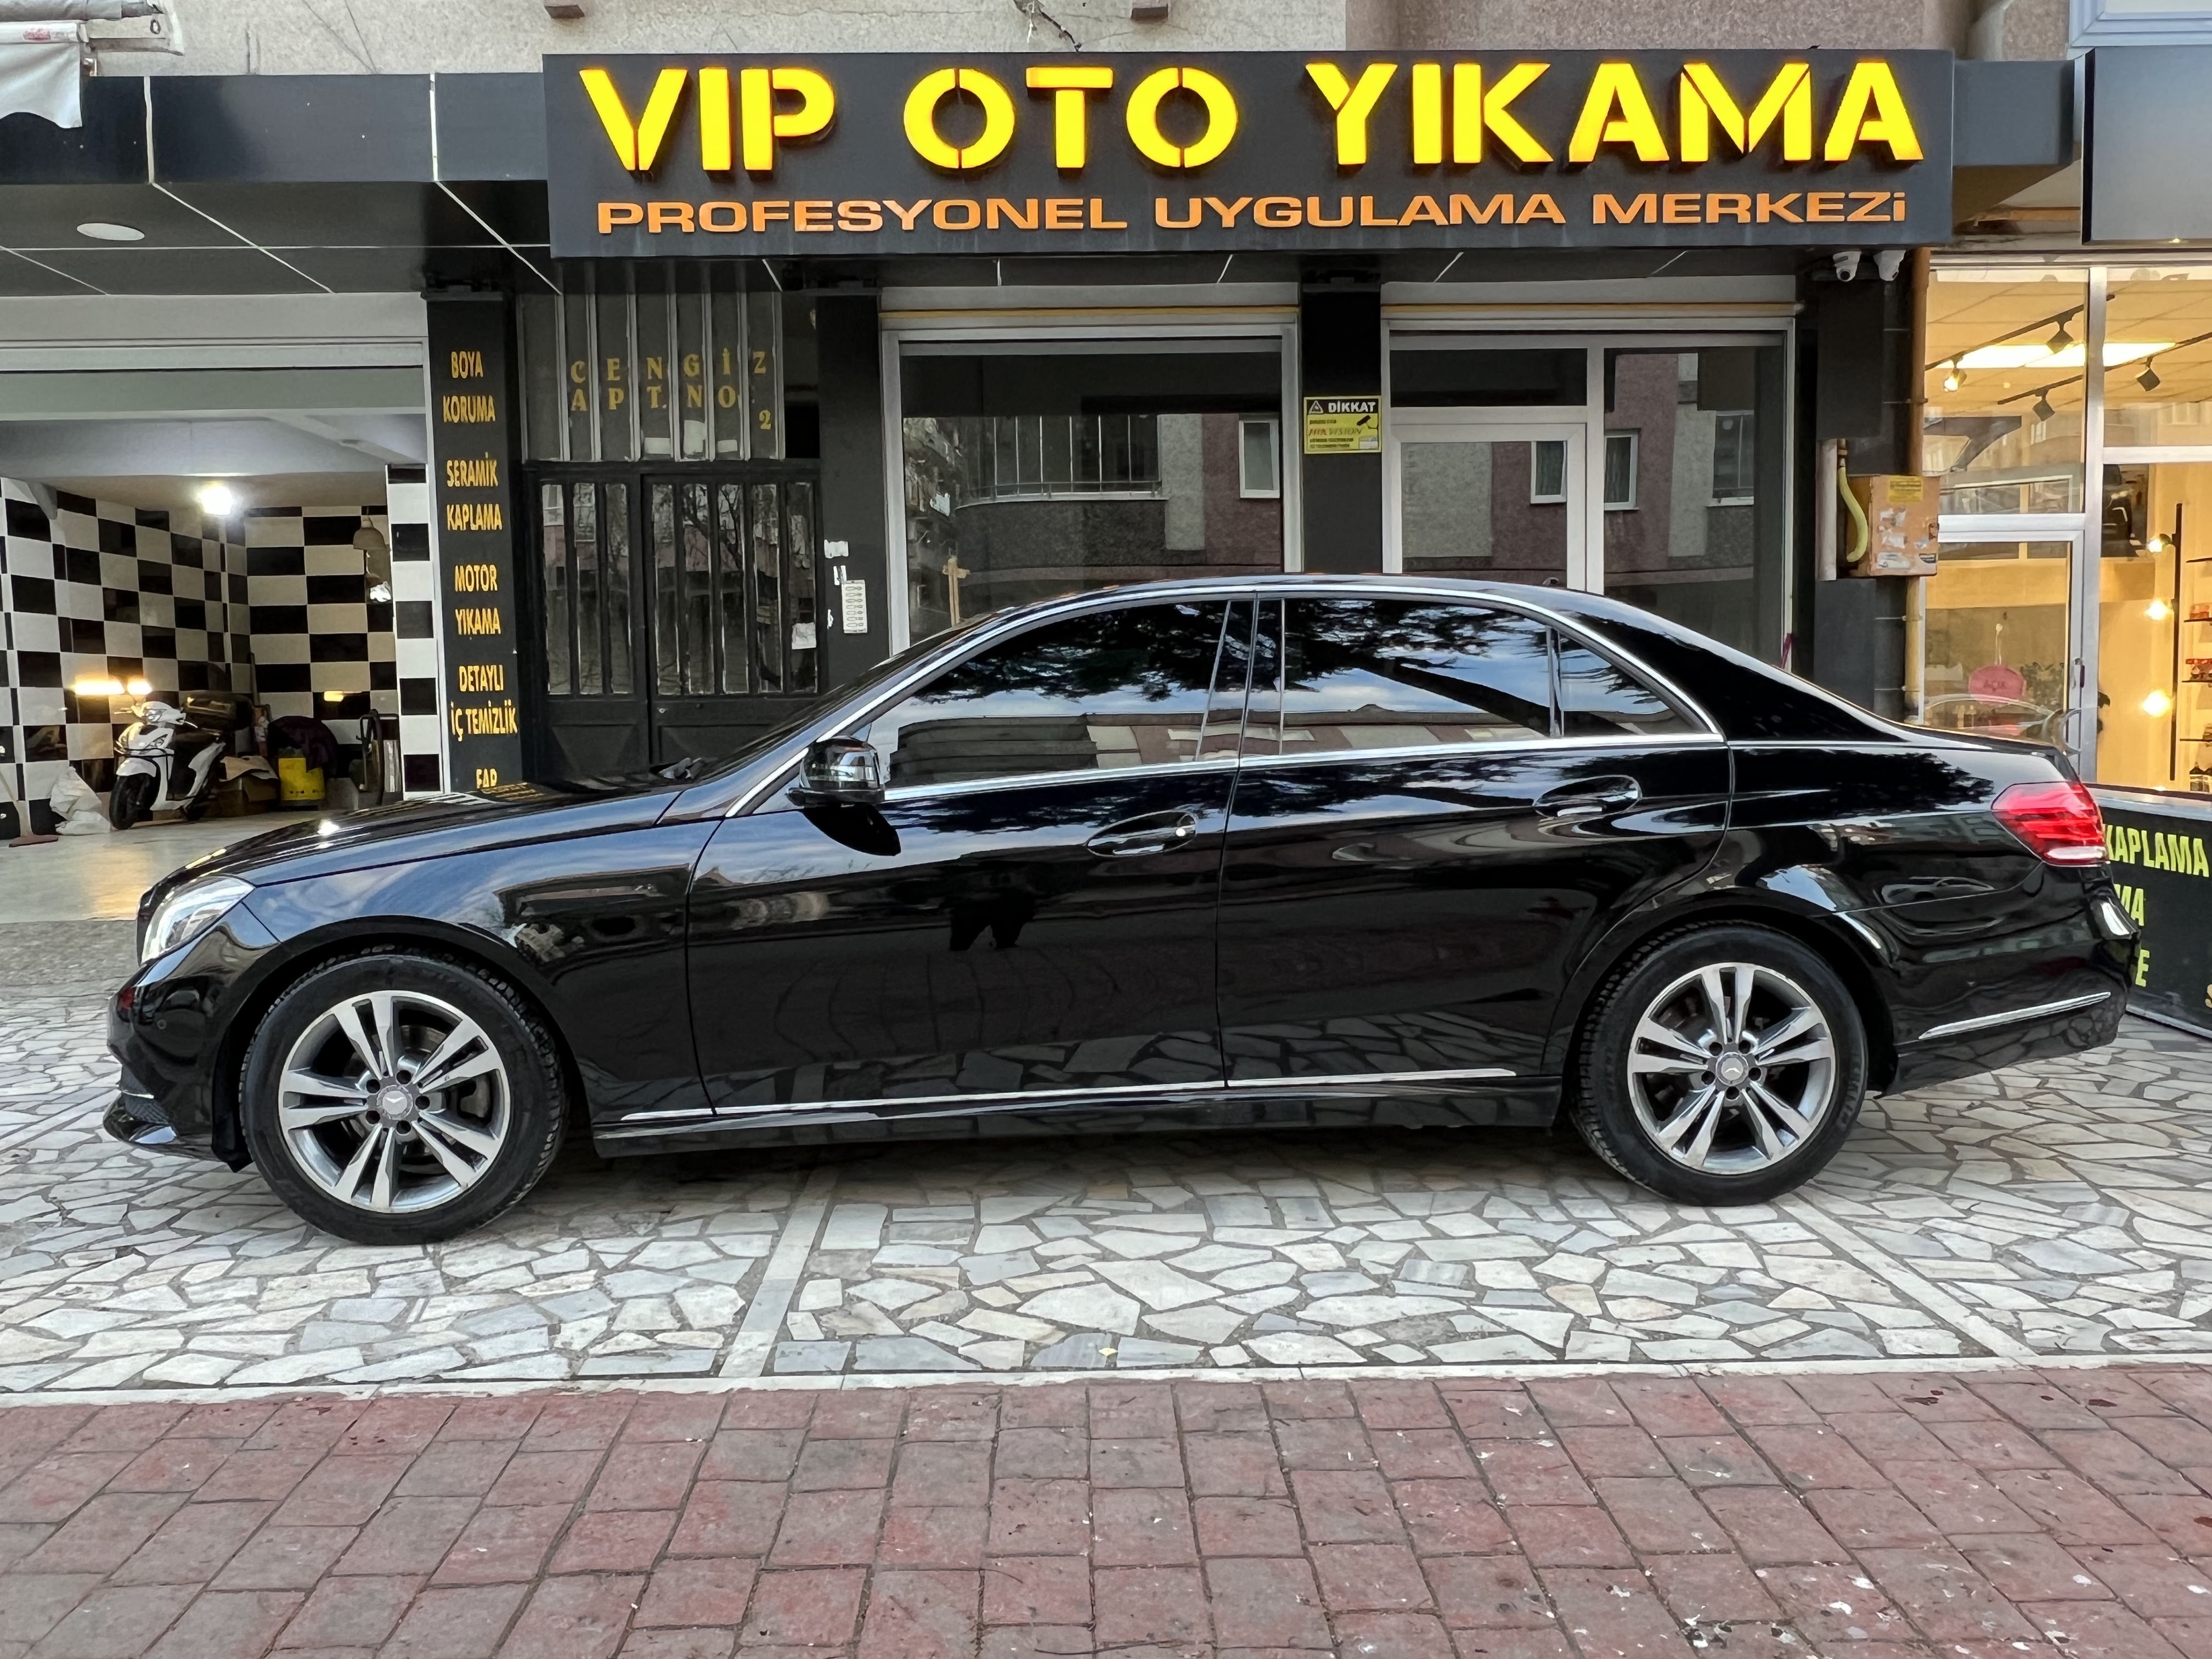 VIP OTO YIKAMA - ATAKUM / SAMSUN